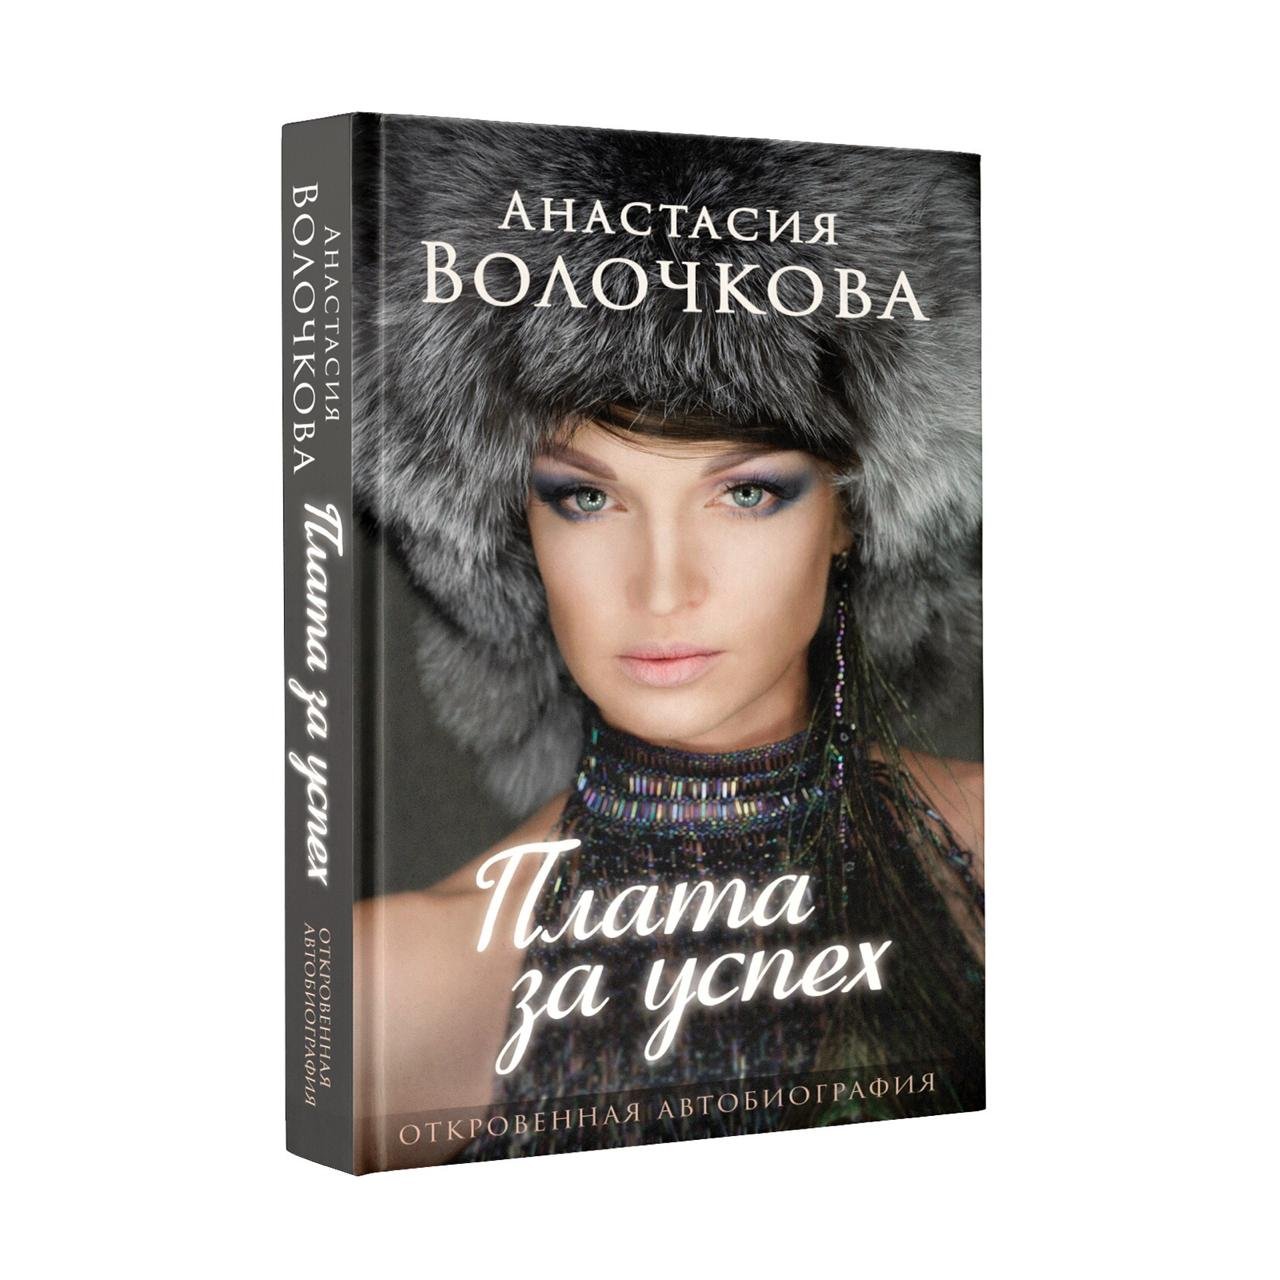 Плата за успех: откровенная автобиография Волочкова Анастасия Юрьевна